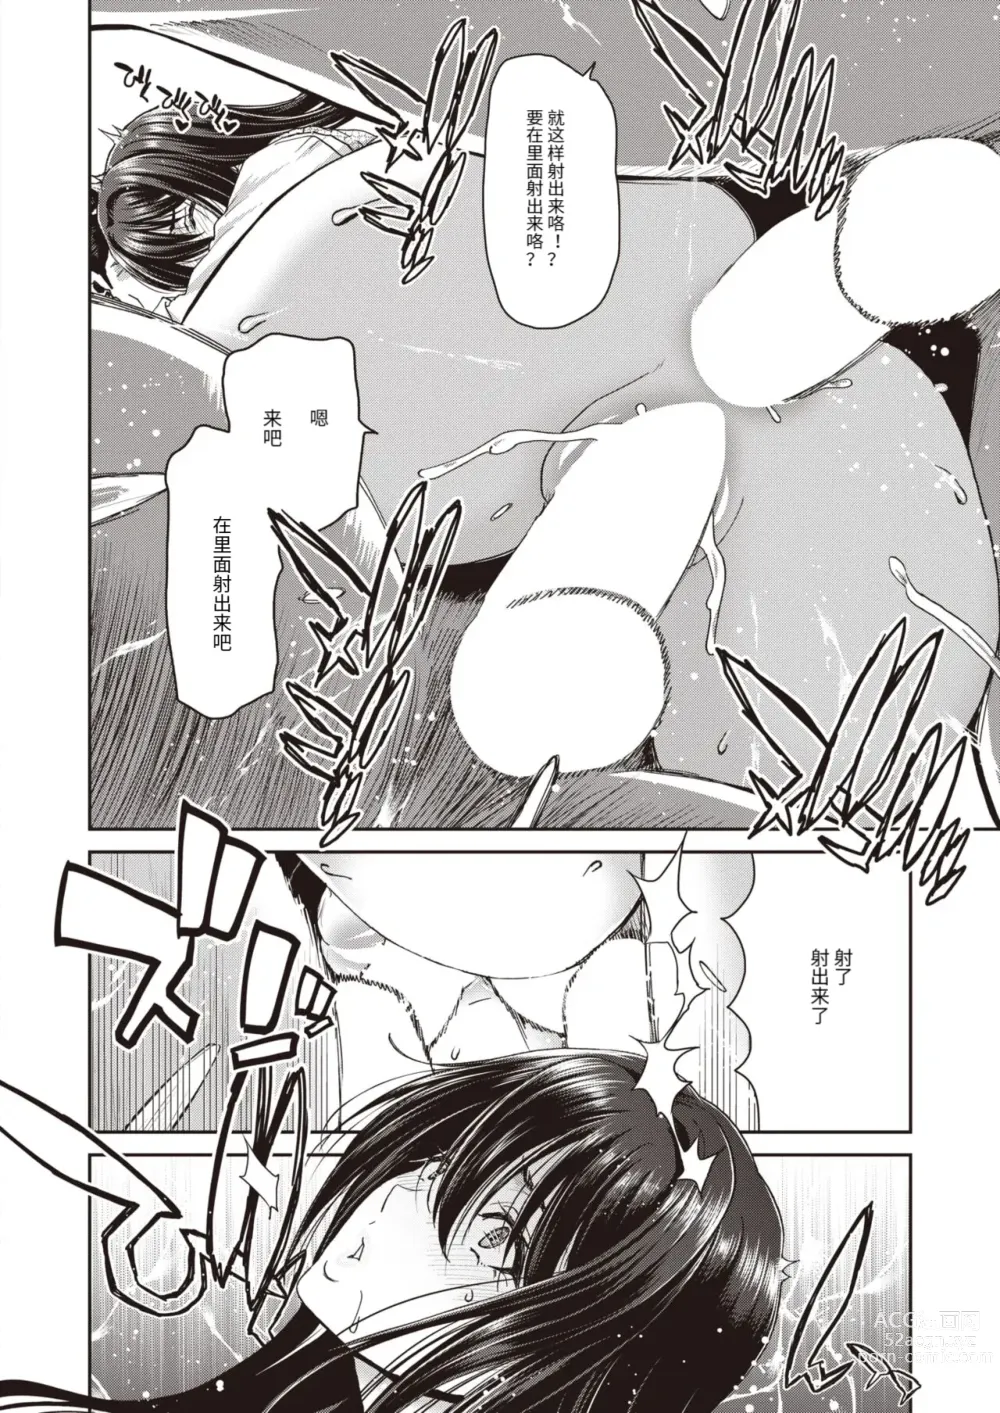 Page 22 of manga Papakatsu